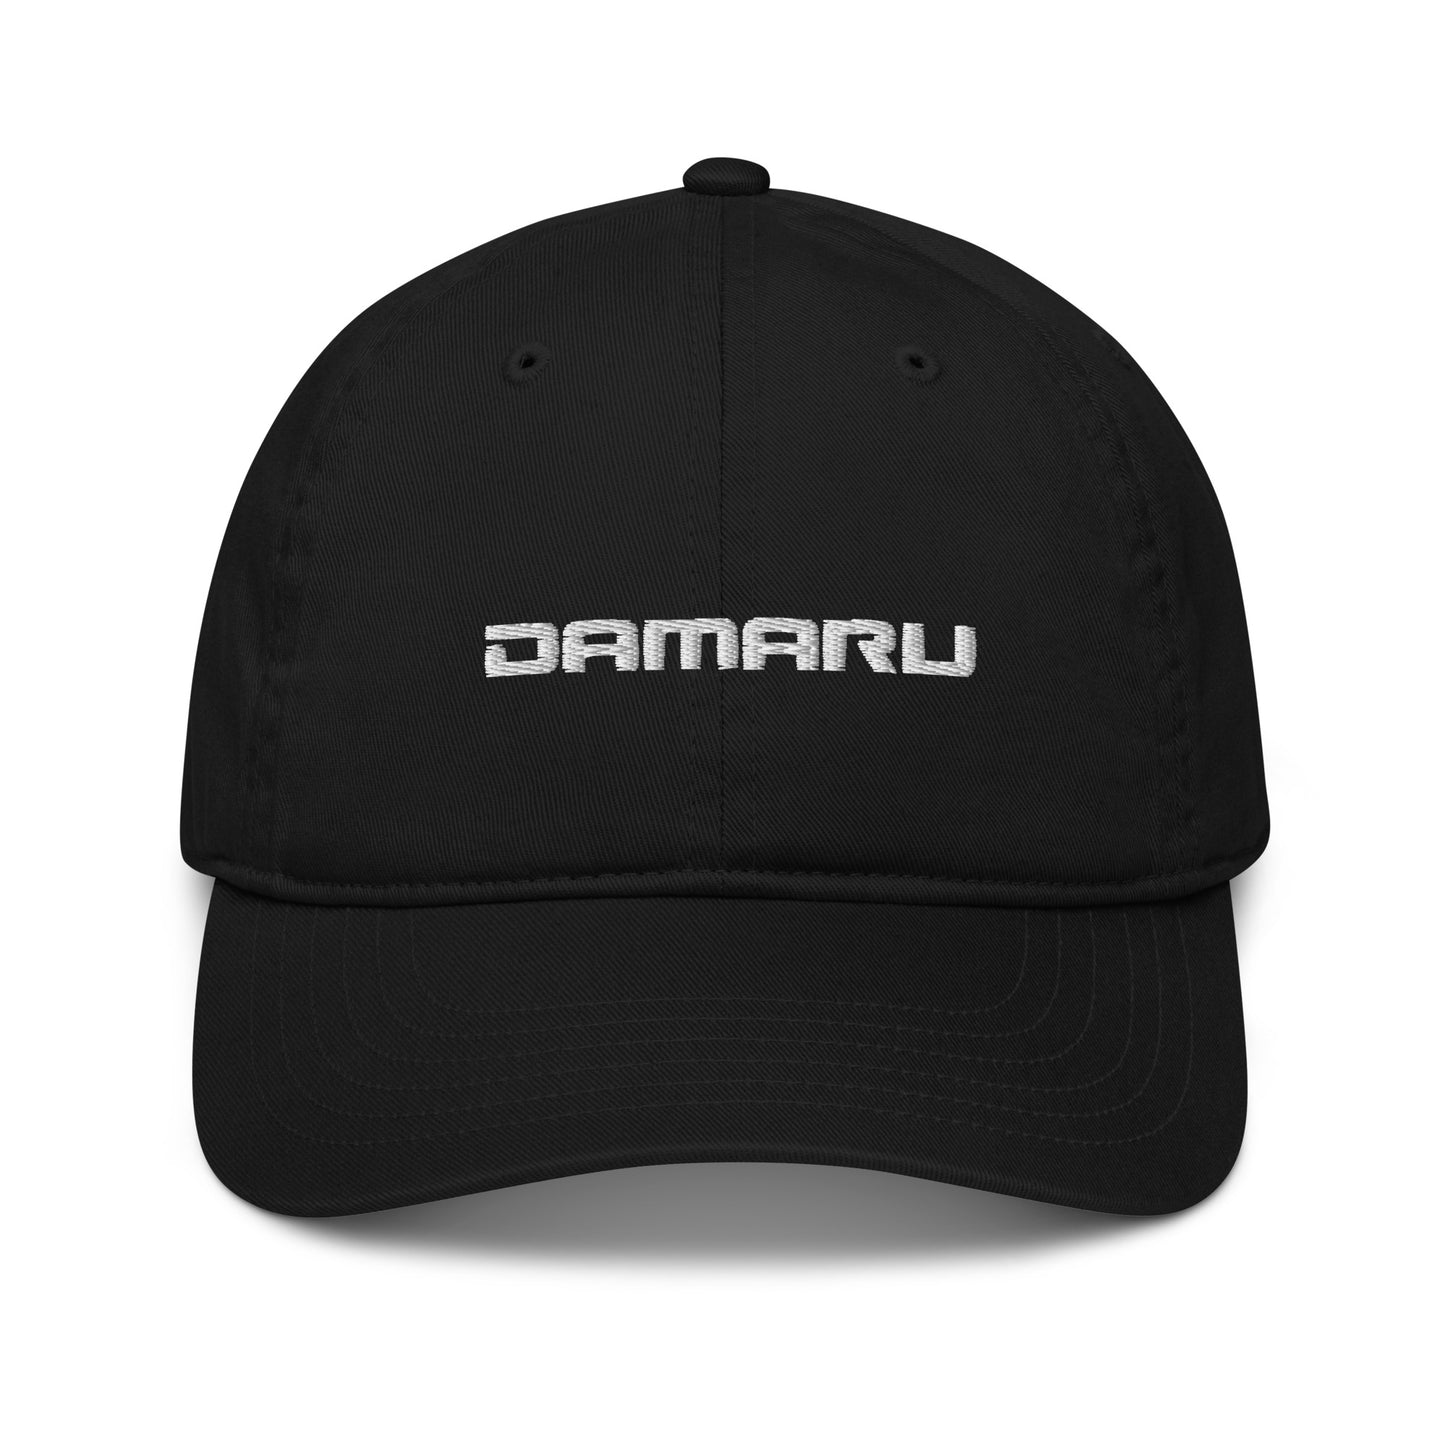 Organic dad hat "Damaru"